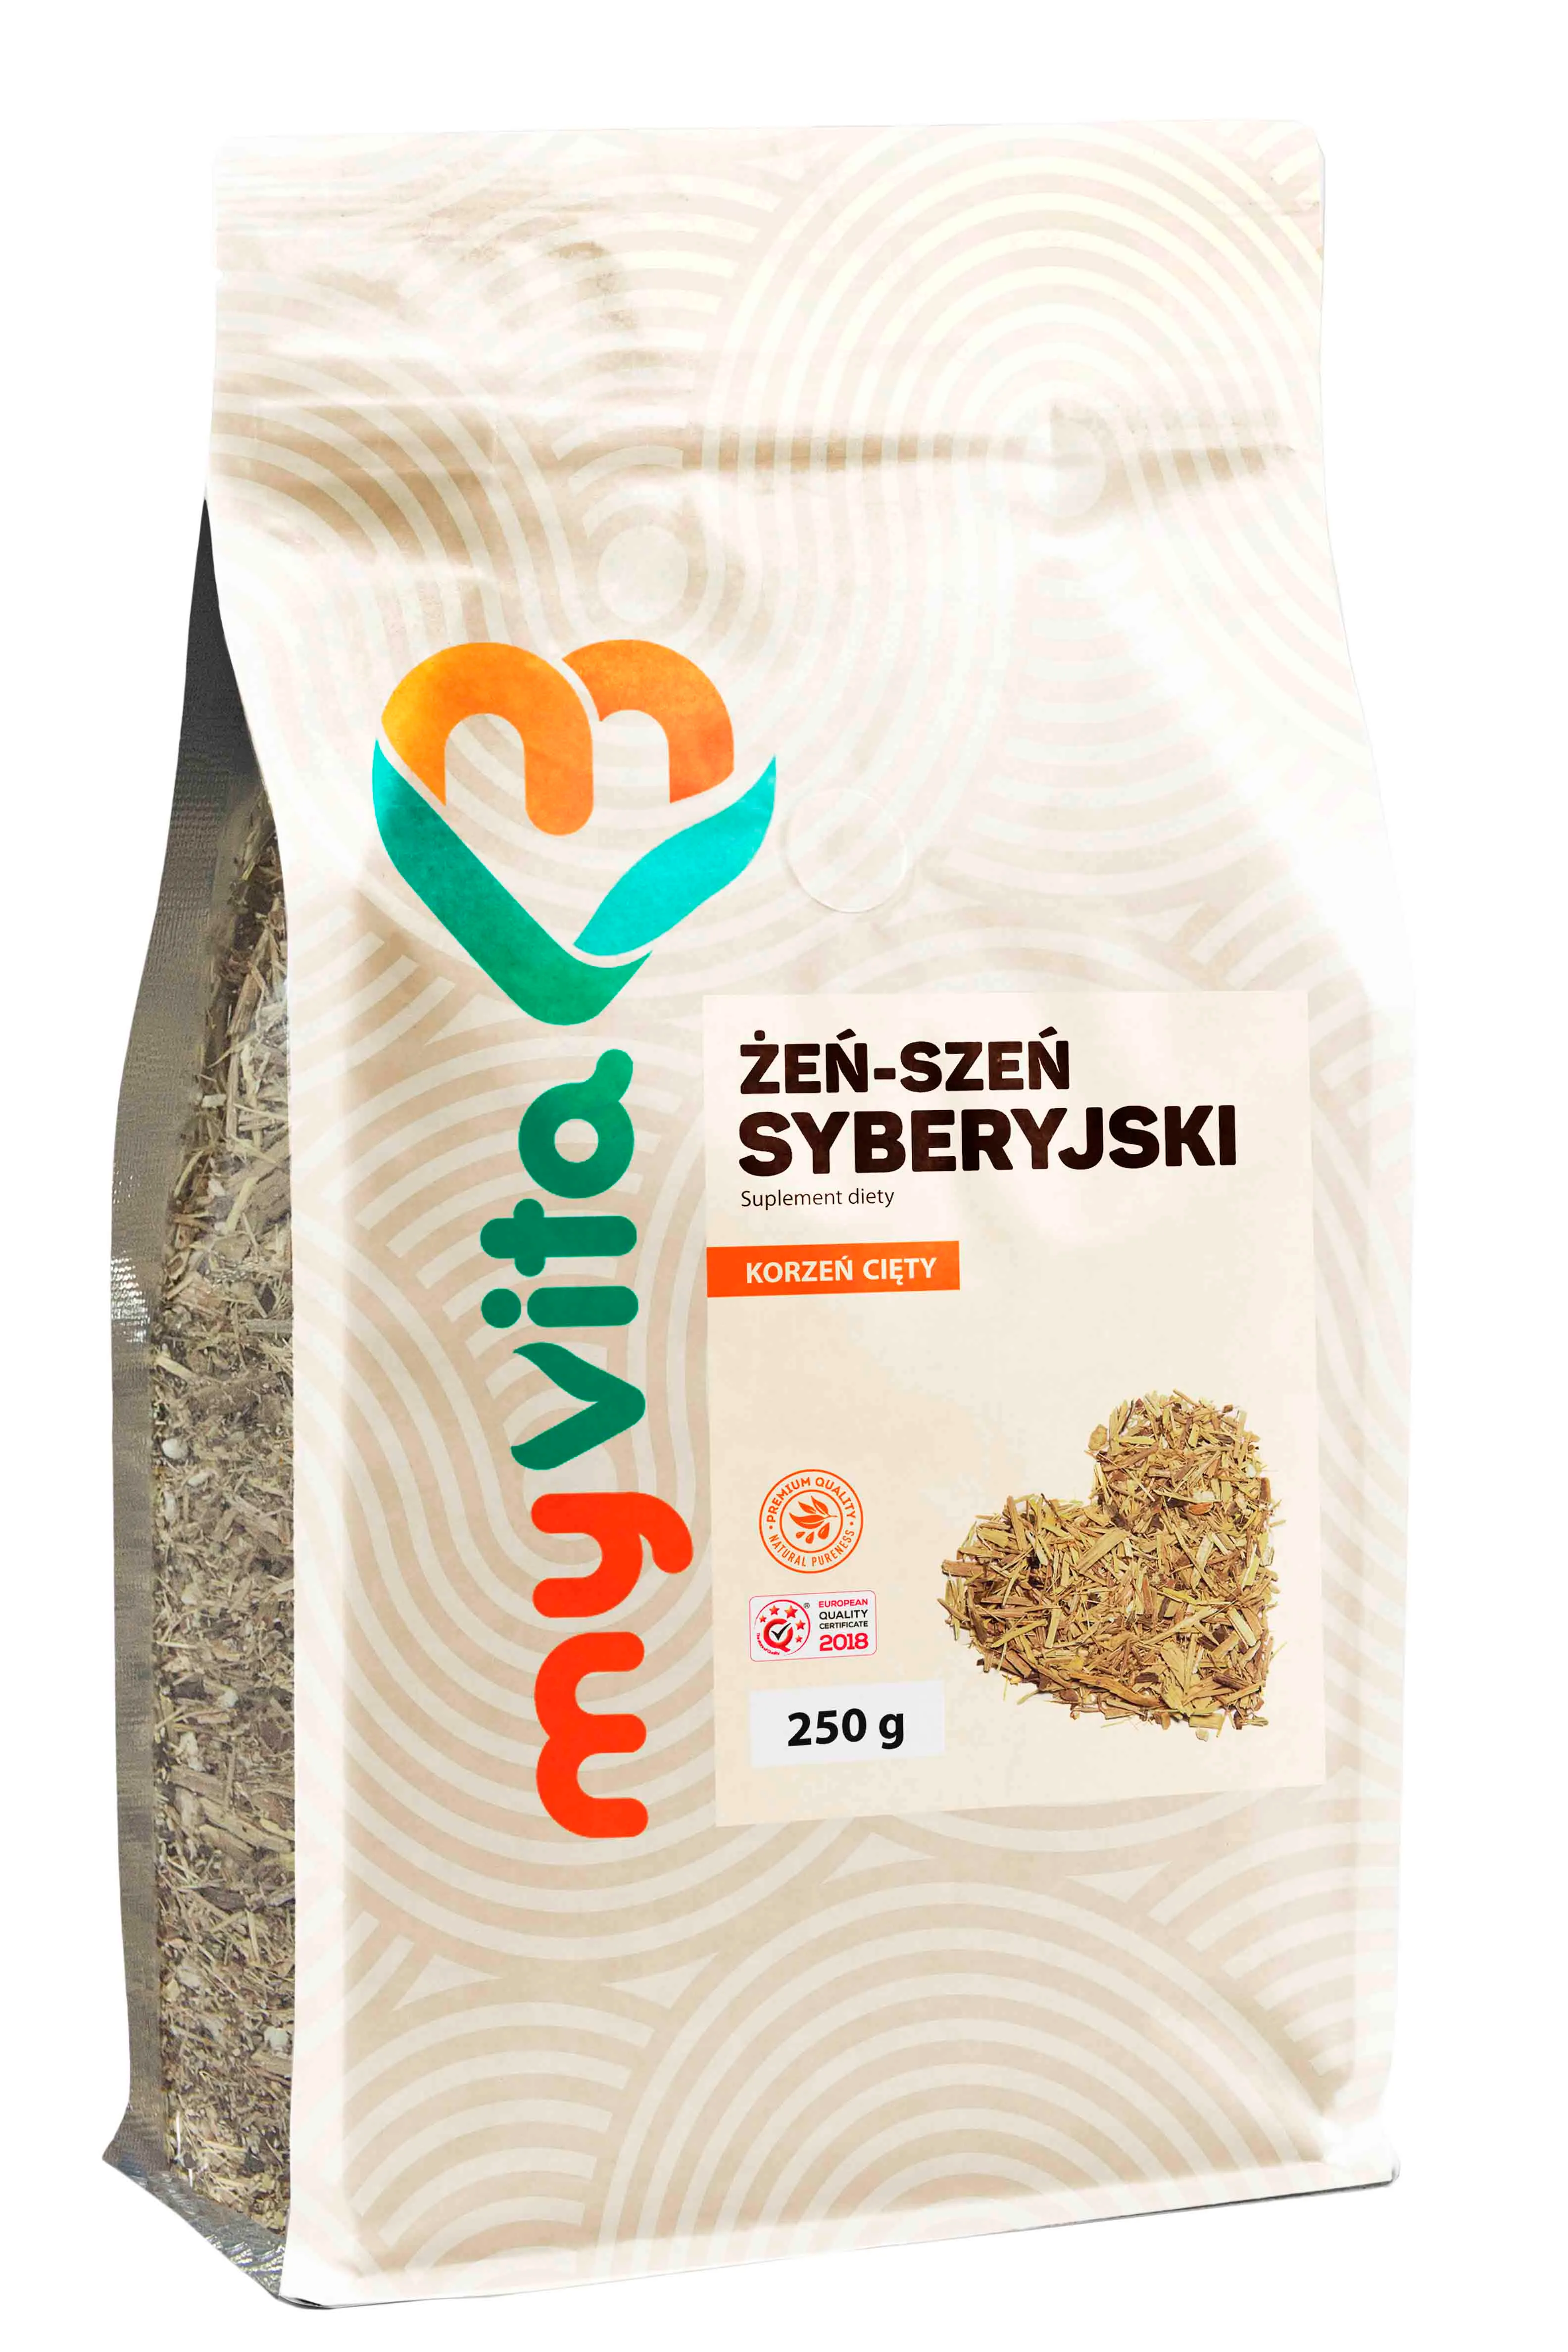 MyVita, Żeń-szeń syberyjski, suplement diety, korzeń cięty, 250g